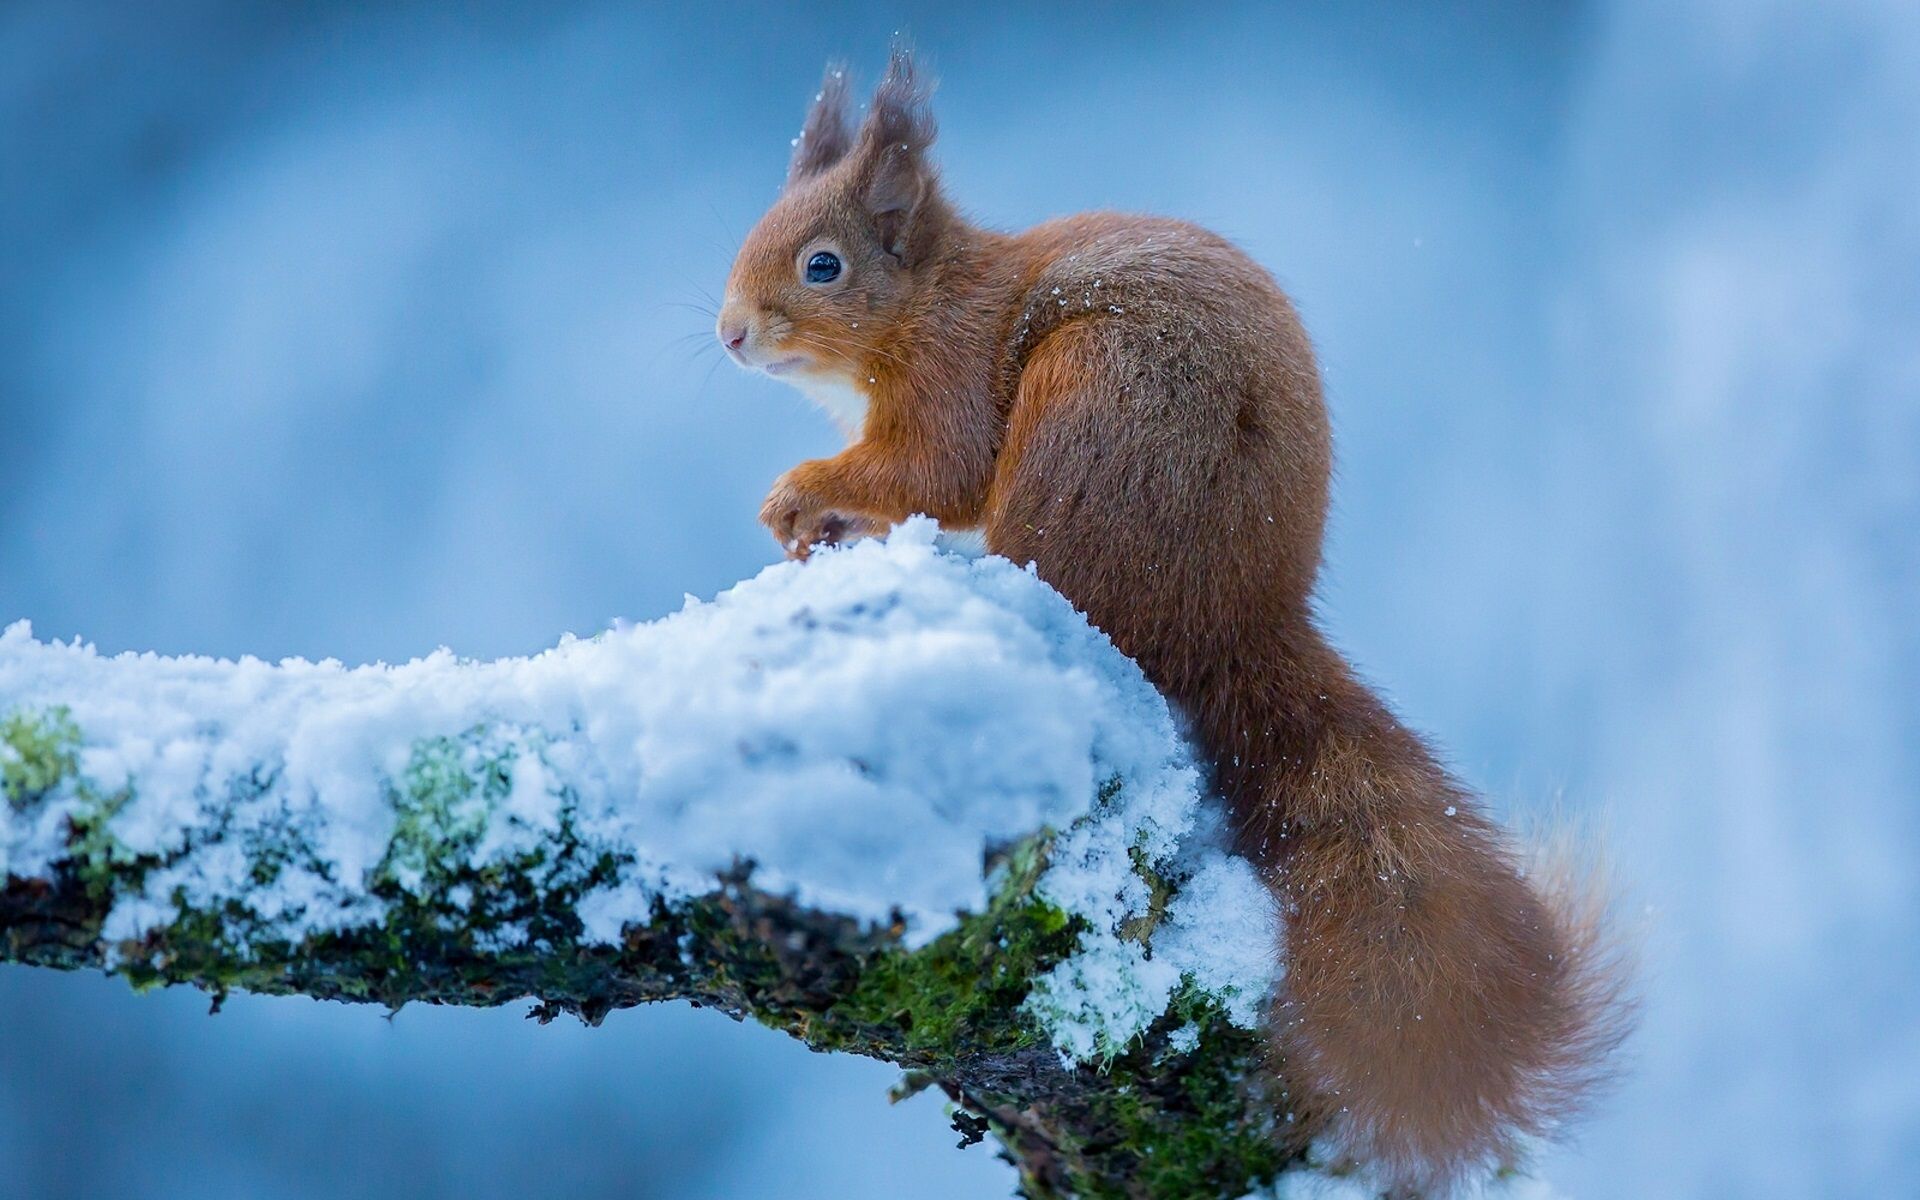  Winter Tiere Hintergrundbild 1920x1200. Eichhörnchen im Winter, Schnee 1920x1200 HD Hintergrundbilder, HD, Bild